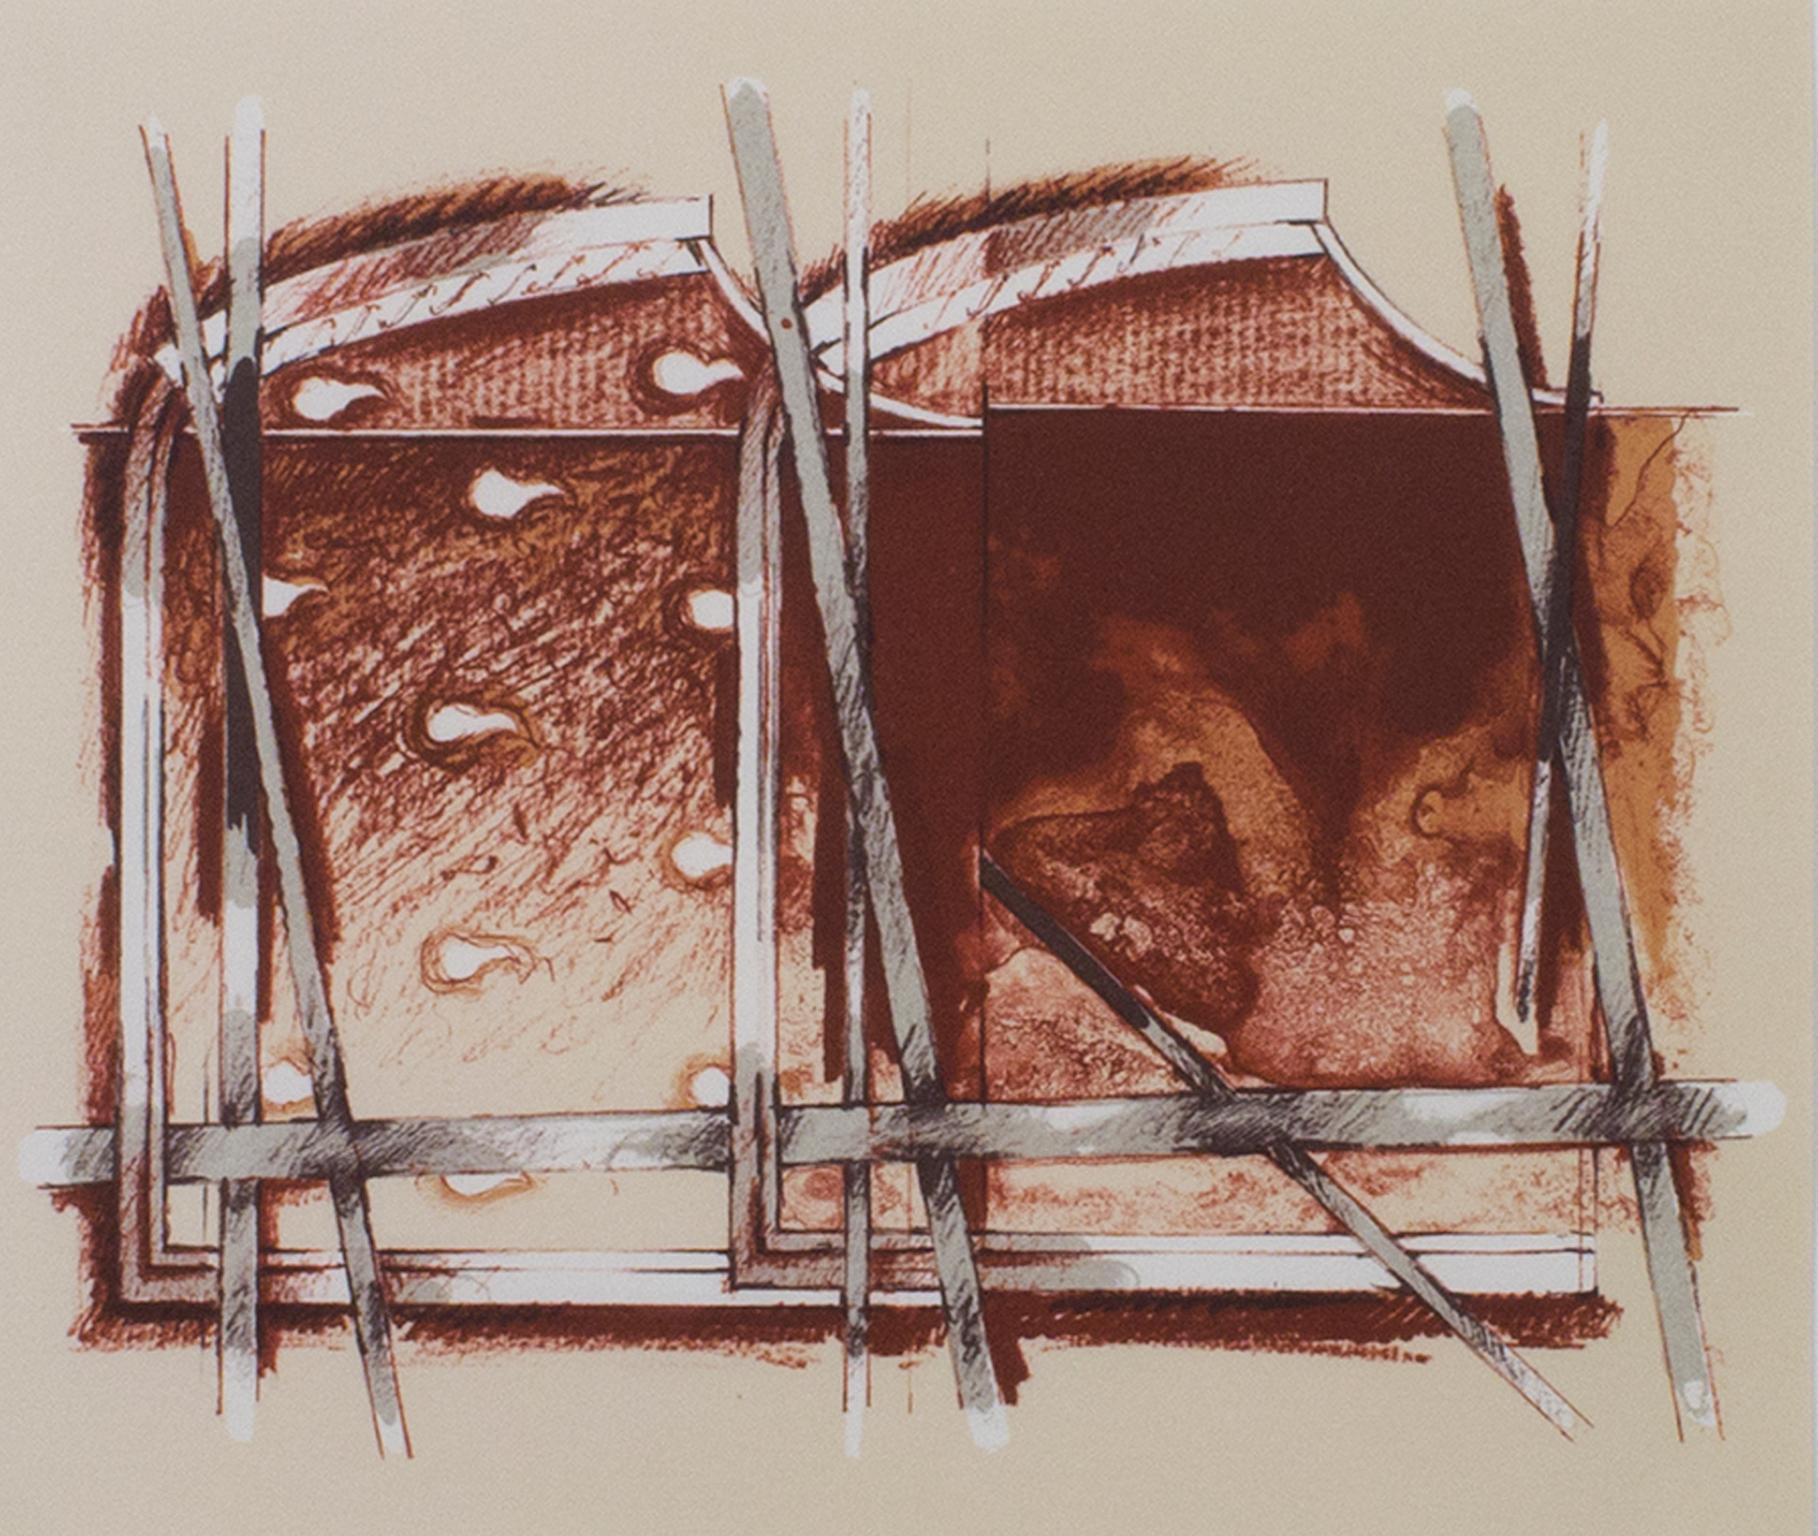 "Abstrait" est une lithographie en couleurs de Gérard Titus-Carmel. Il présente un mélange de formes biomorphiques et géométriques/structurelles dans des tons sépia. 

8 1/4" x 9 1/2" art
cadre de 16 7/8" x 18"

Gérard Titus-Carmel , né le 10